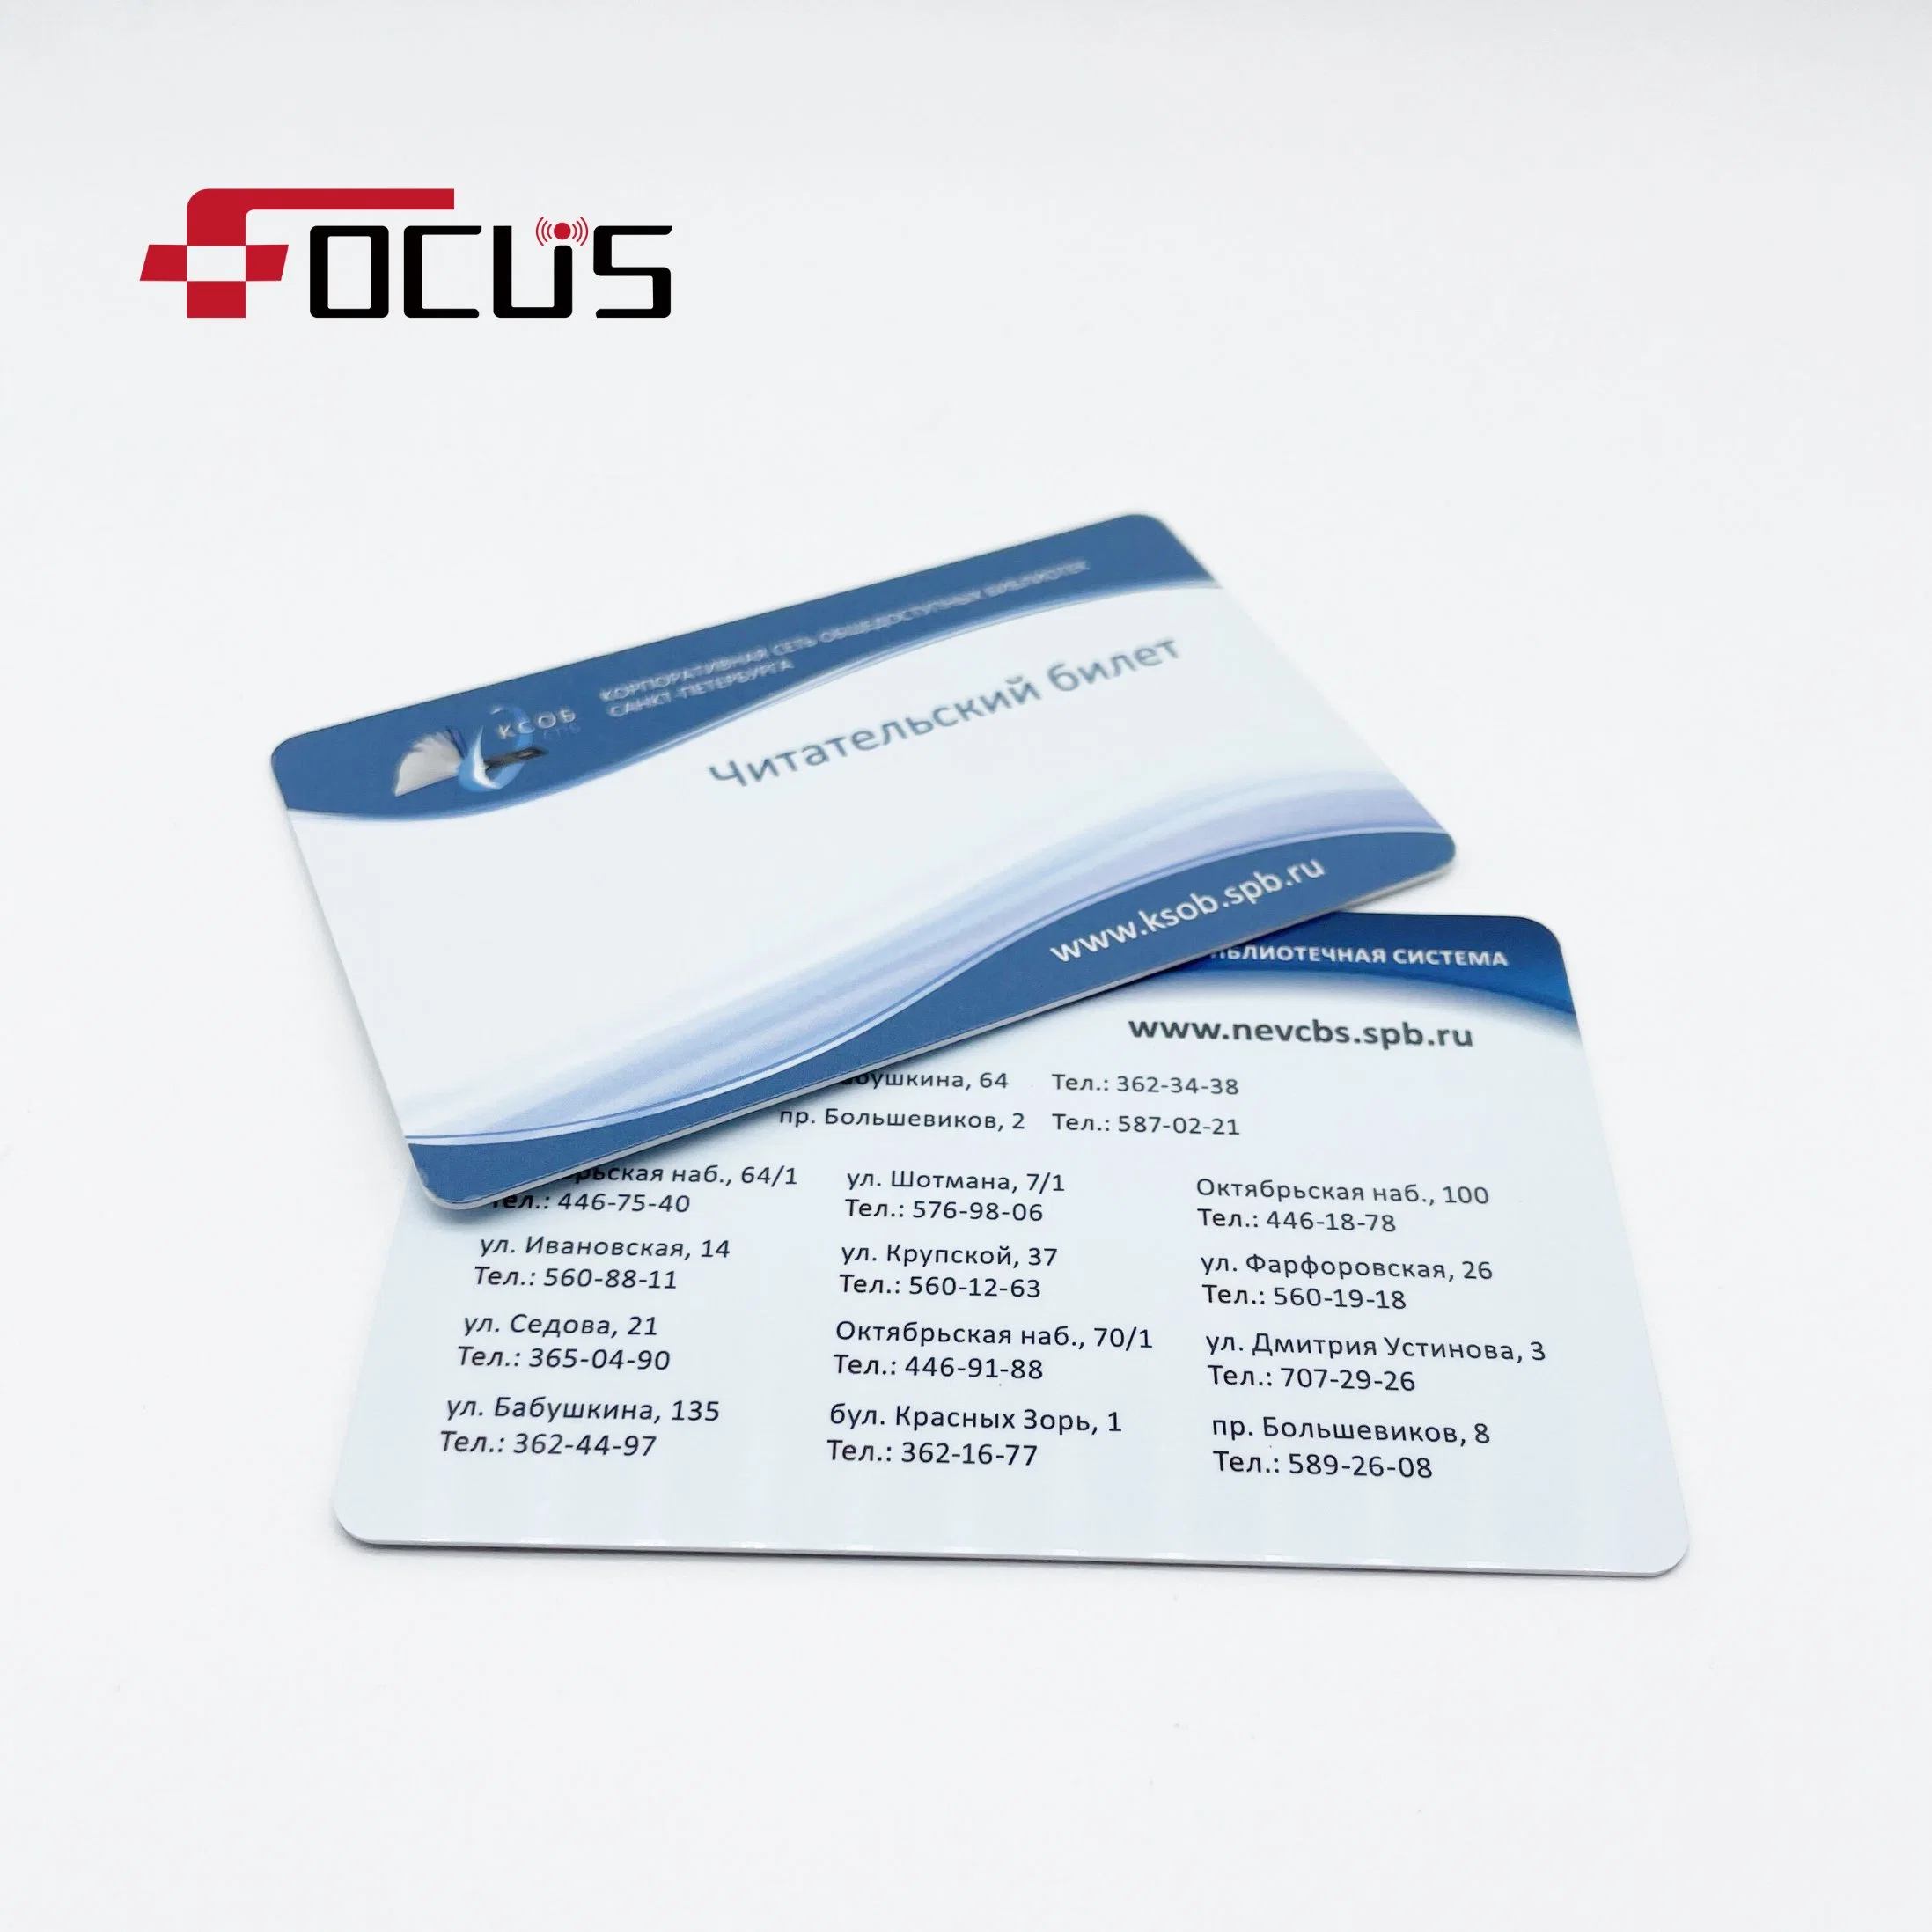 Clé de porte magnétique à code-barres RFID personnalisée, vierge, imprimable en PVC, en plastique Carte d'accès